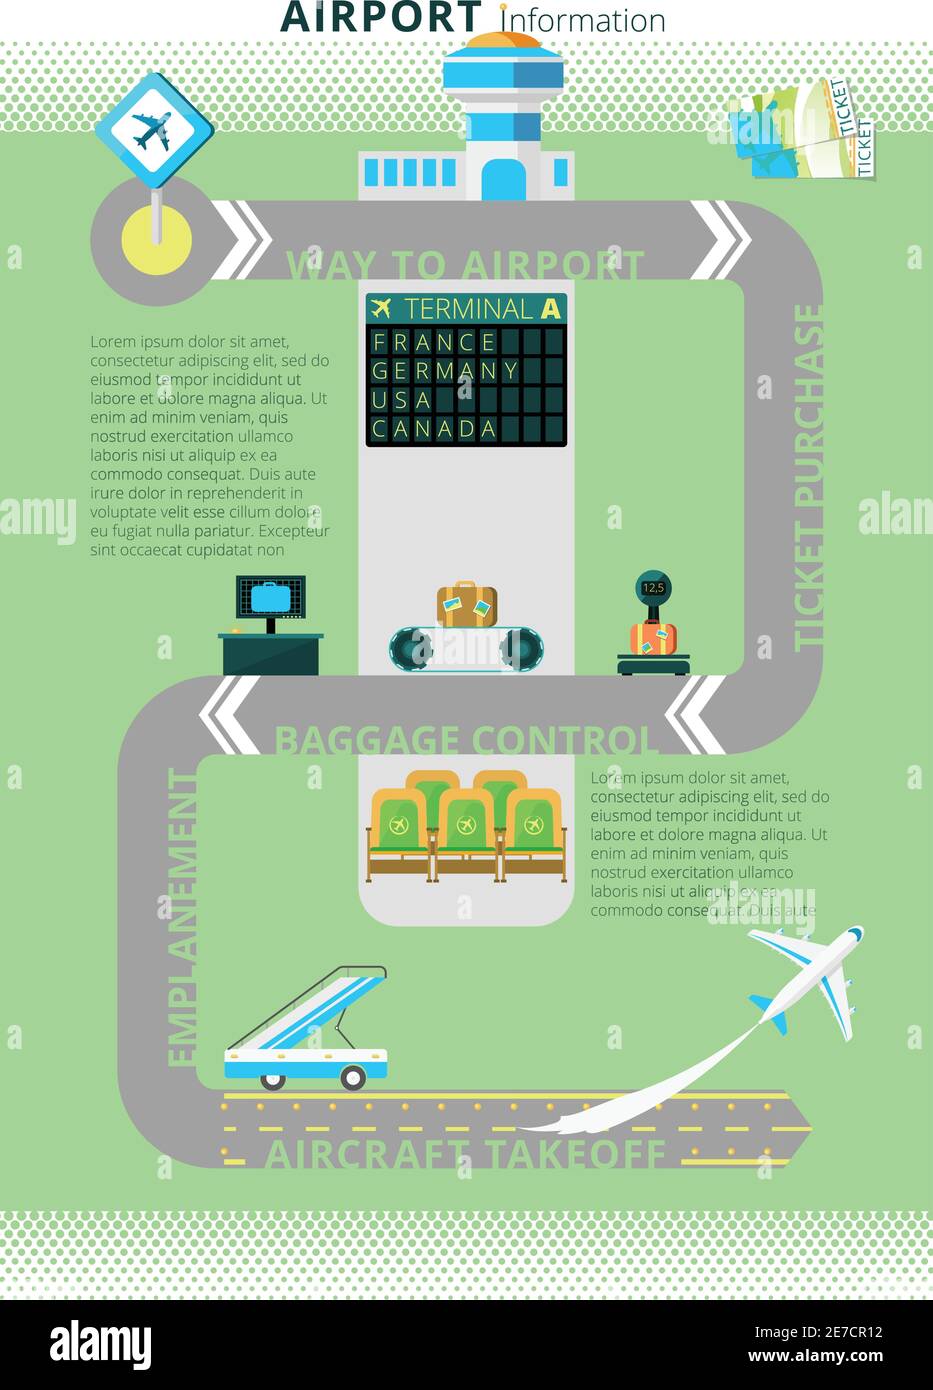 Scheda informativa sui voli aeroportuali combinata con visualizzazione digitale dello schema dell'infografica all'ingresso illustrazione vettoriale astratta Illustrazione Vettoriale